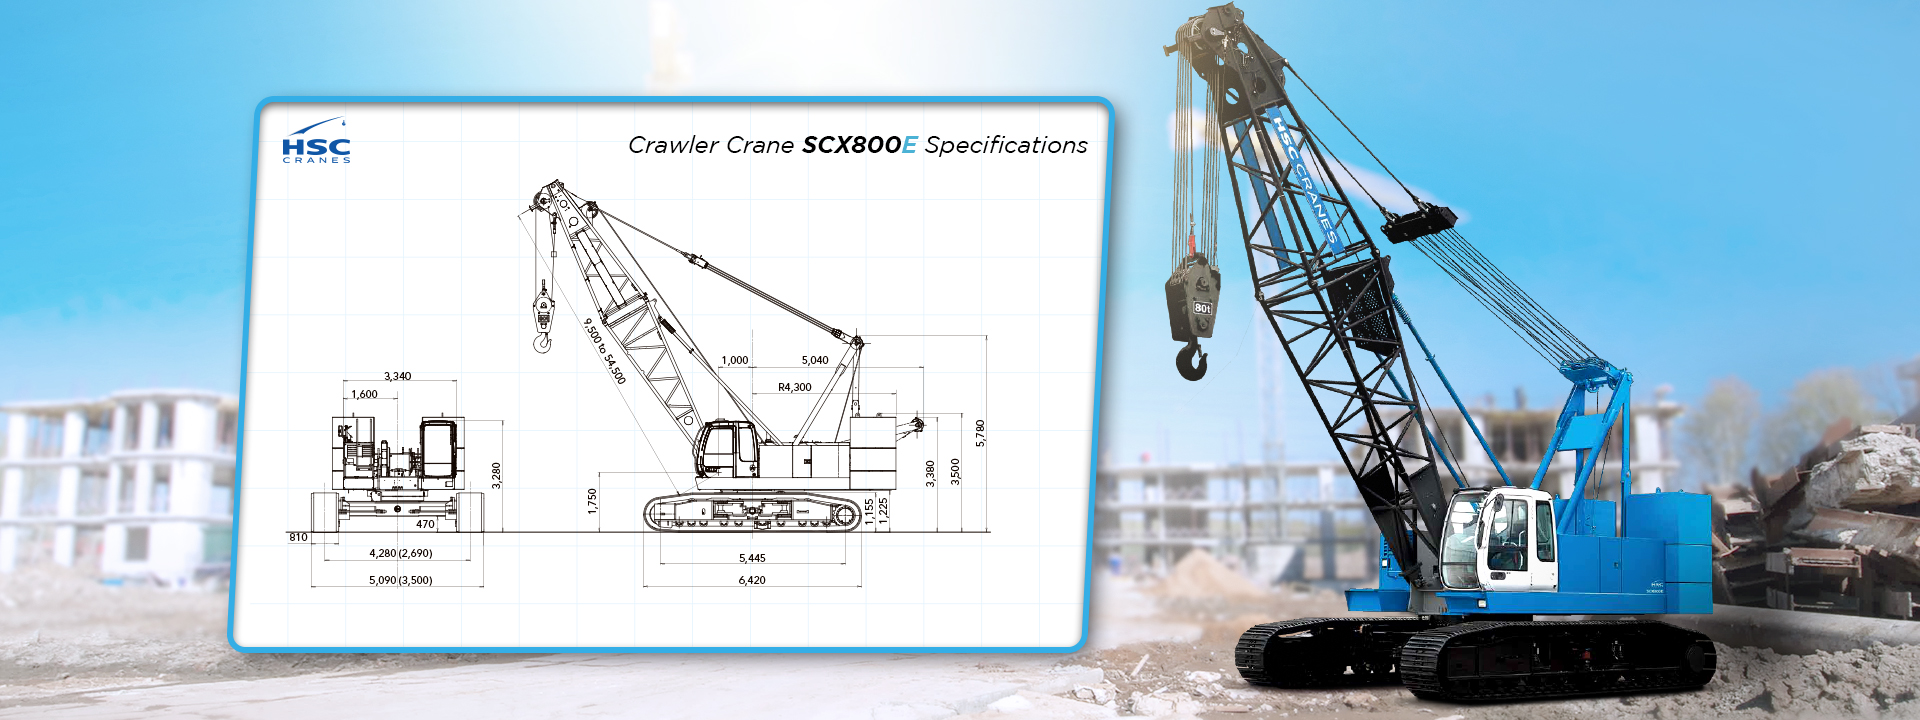 Crawler crane scx800e